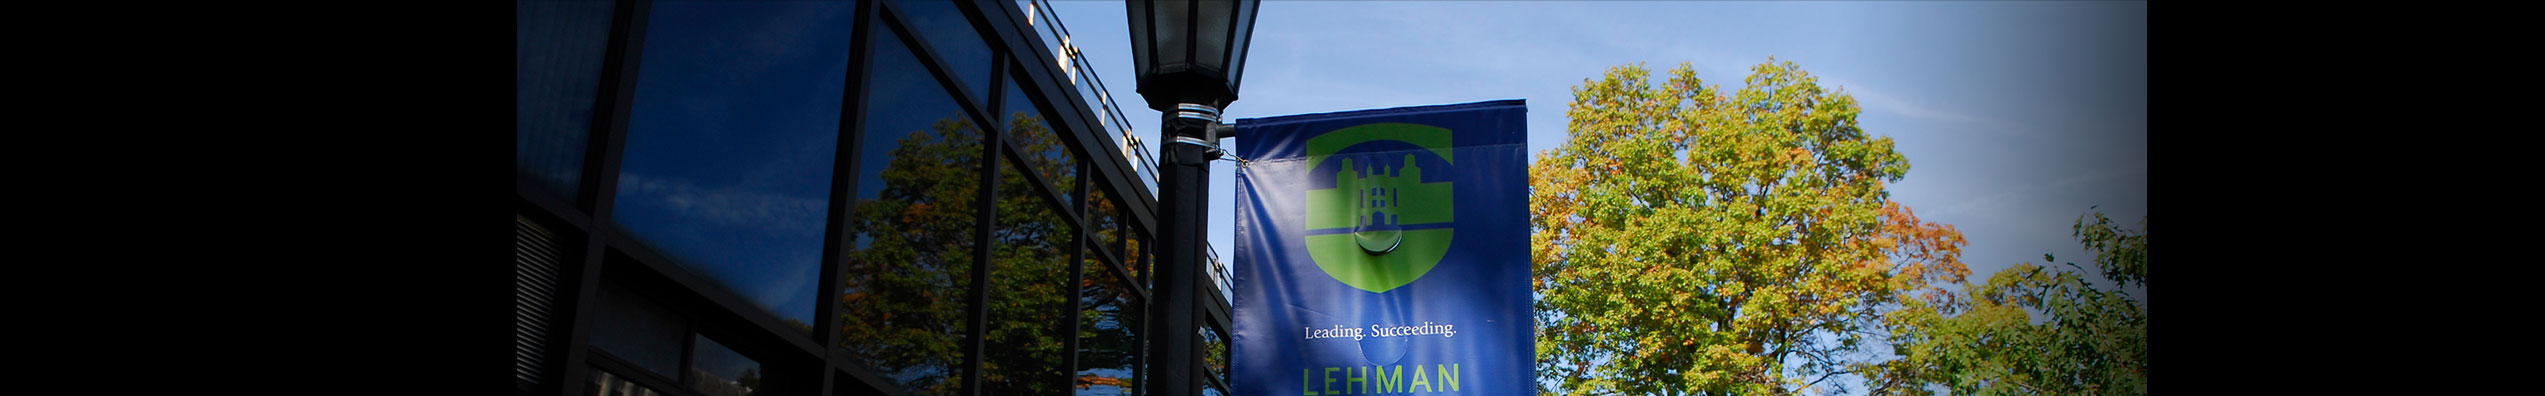 Lehman LIFE